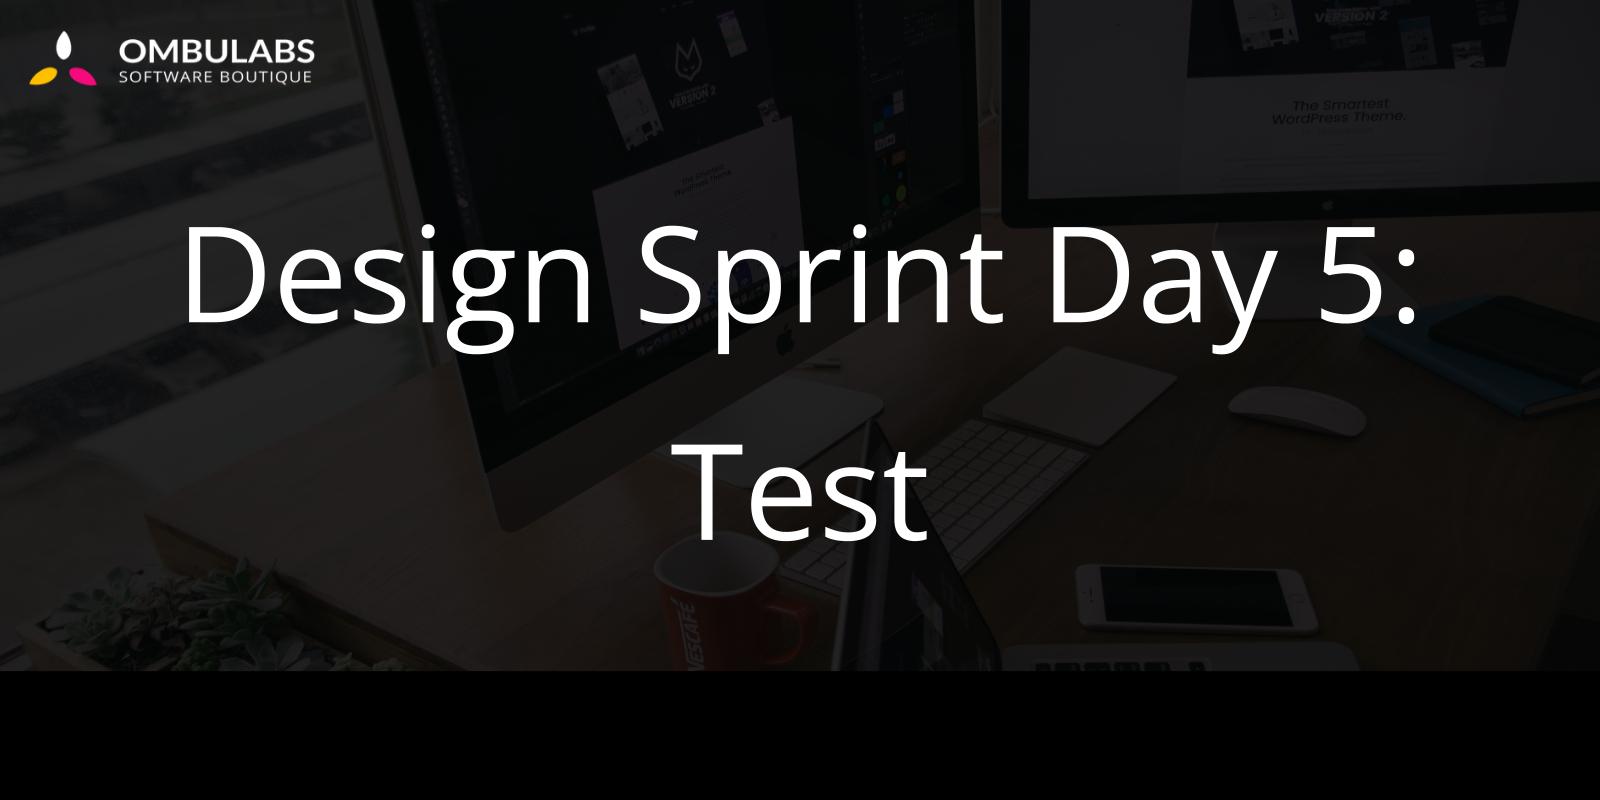 Design Sprint Day 5: Test